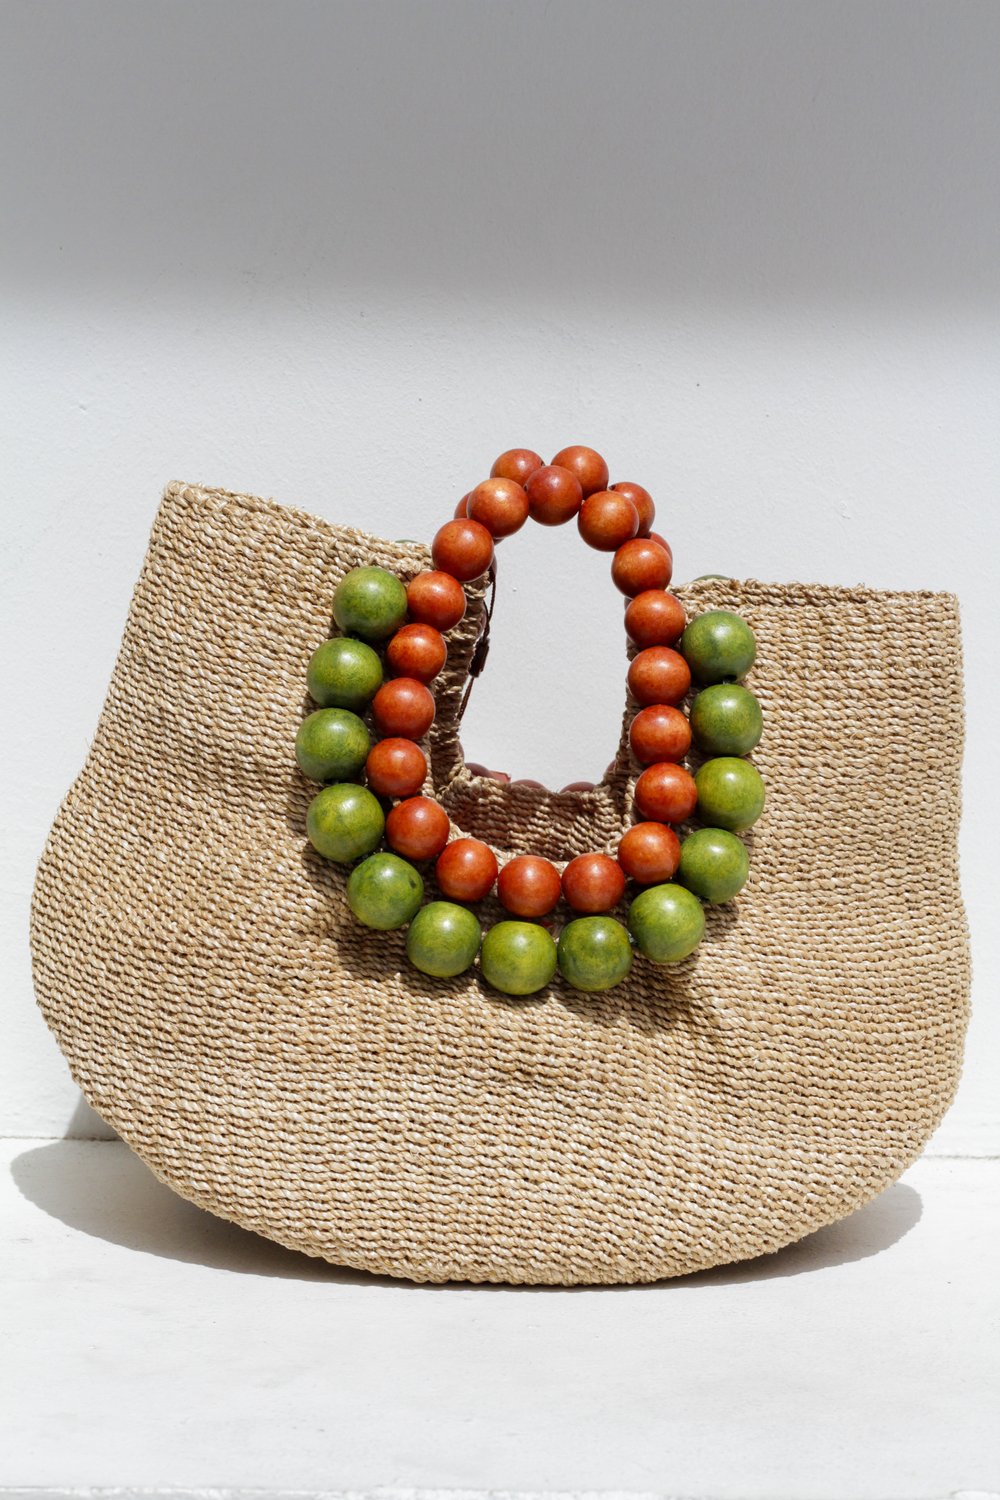 ARANÁZ Cueba Beads in Natural/Olive/Tan